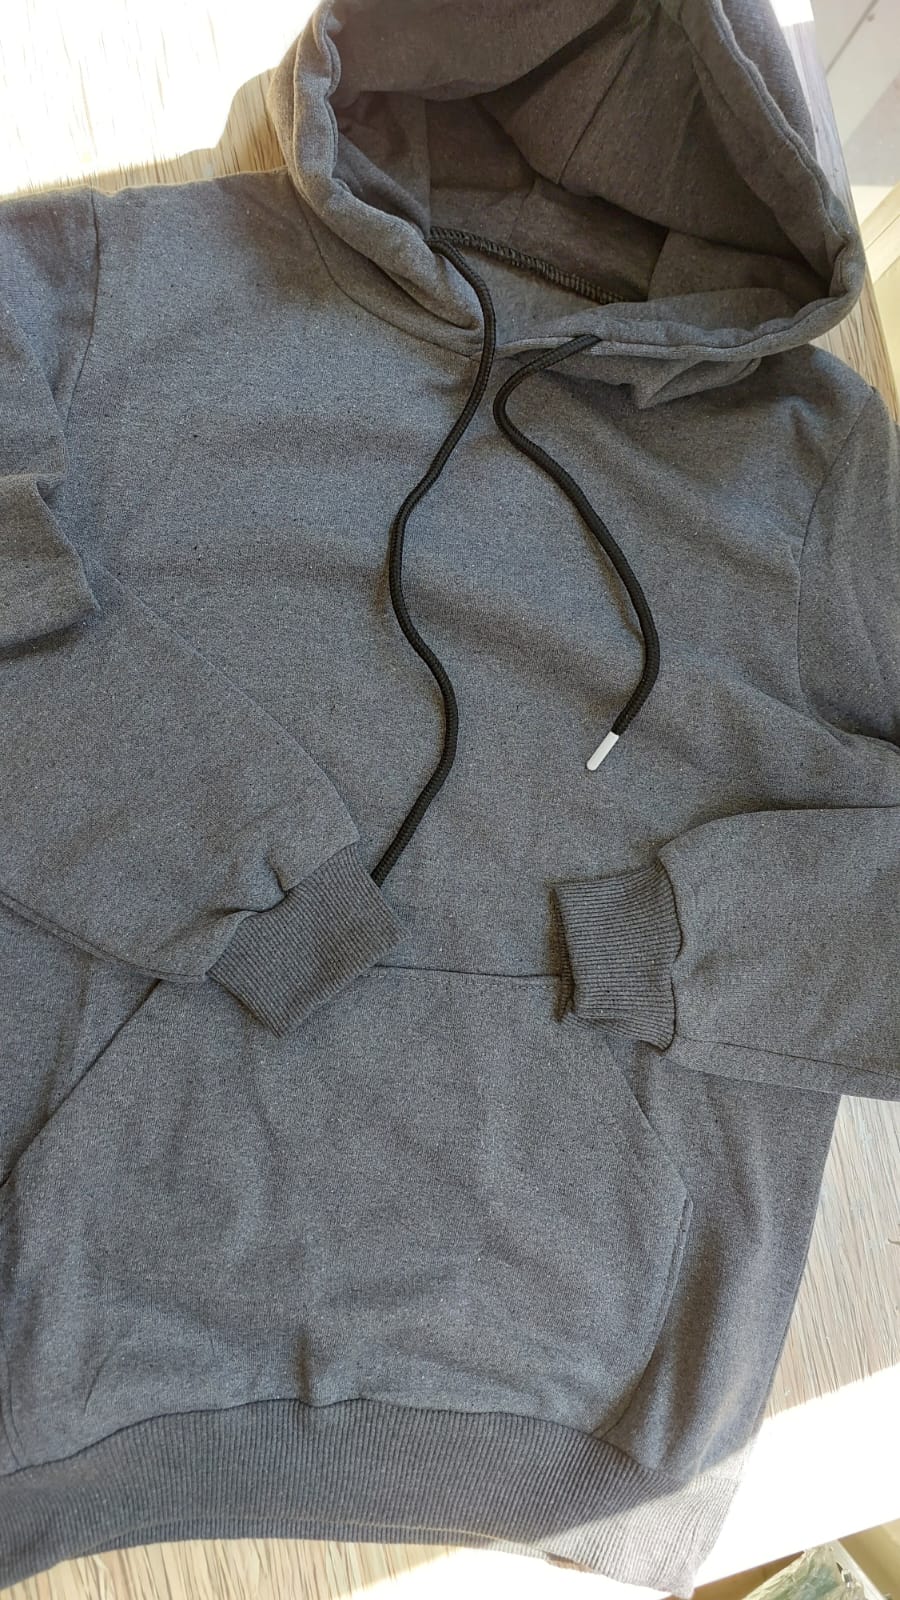 sweatshirt tasarla uygun fiyat yuvarlak yaka iki iplik 4